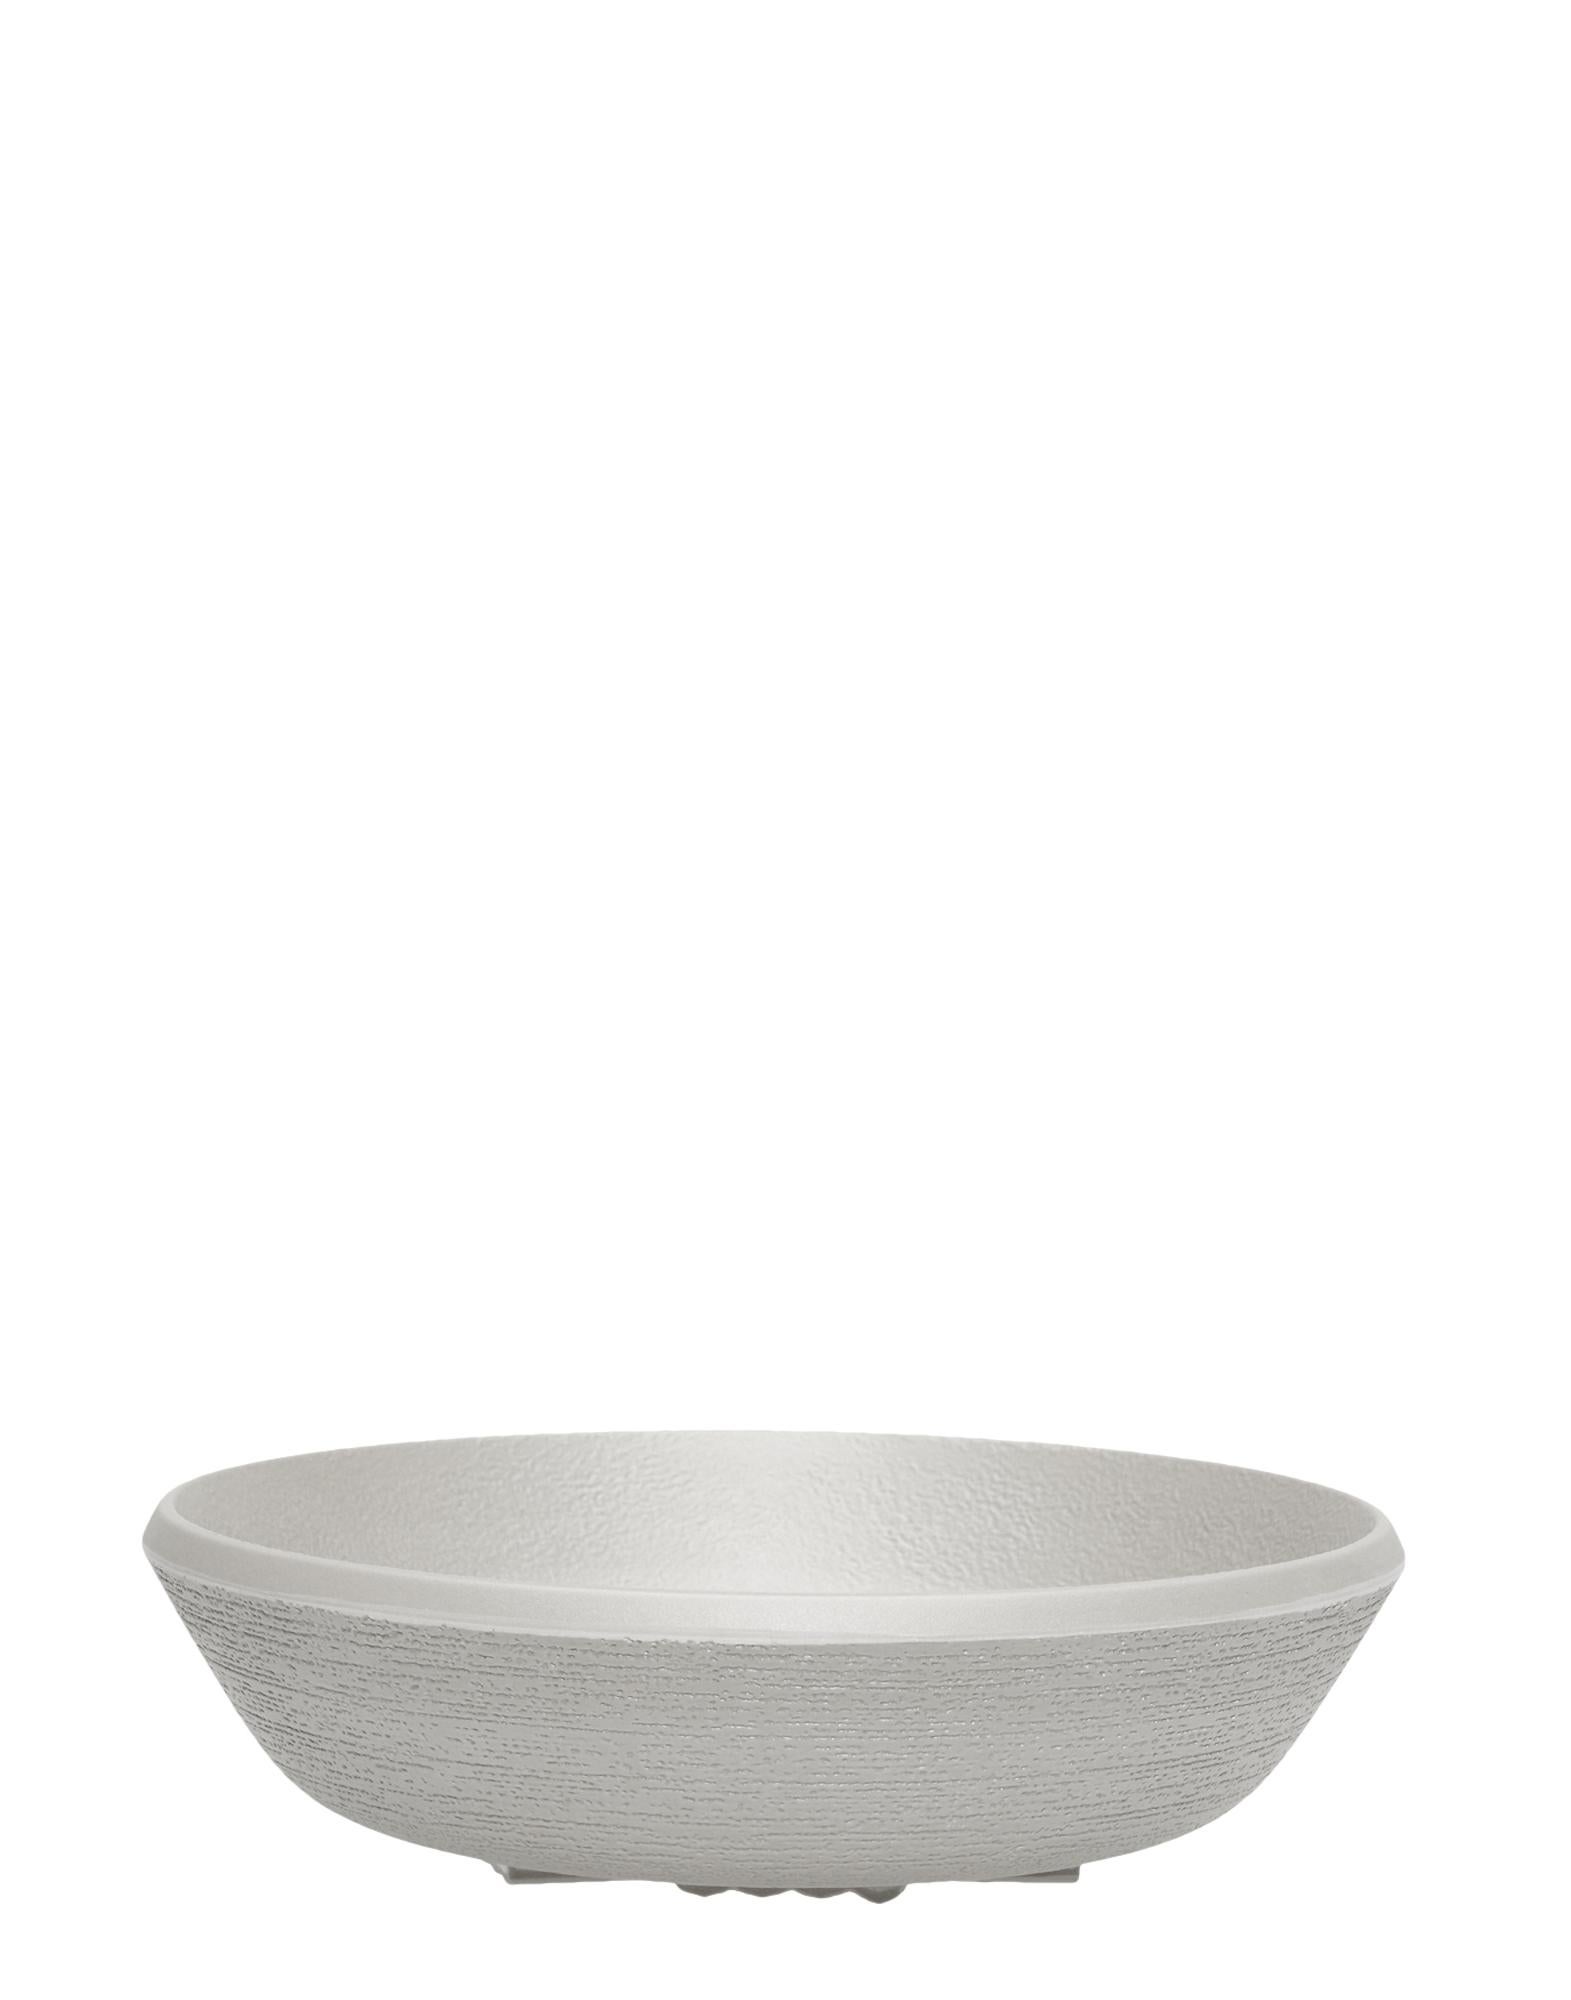 La collection de vaisselle Trama est un service complet inspiré de la poterie japonaise, avec ses textures caractéristiques et très raffinées, ses couleurs naturelles et ses finitions mates. Semblables aux poteries associées aux maisons de campagne,